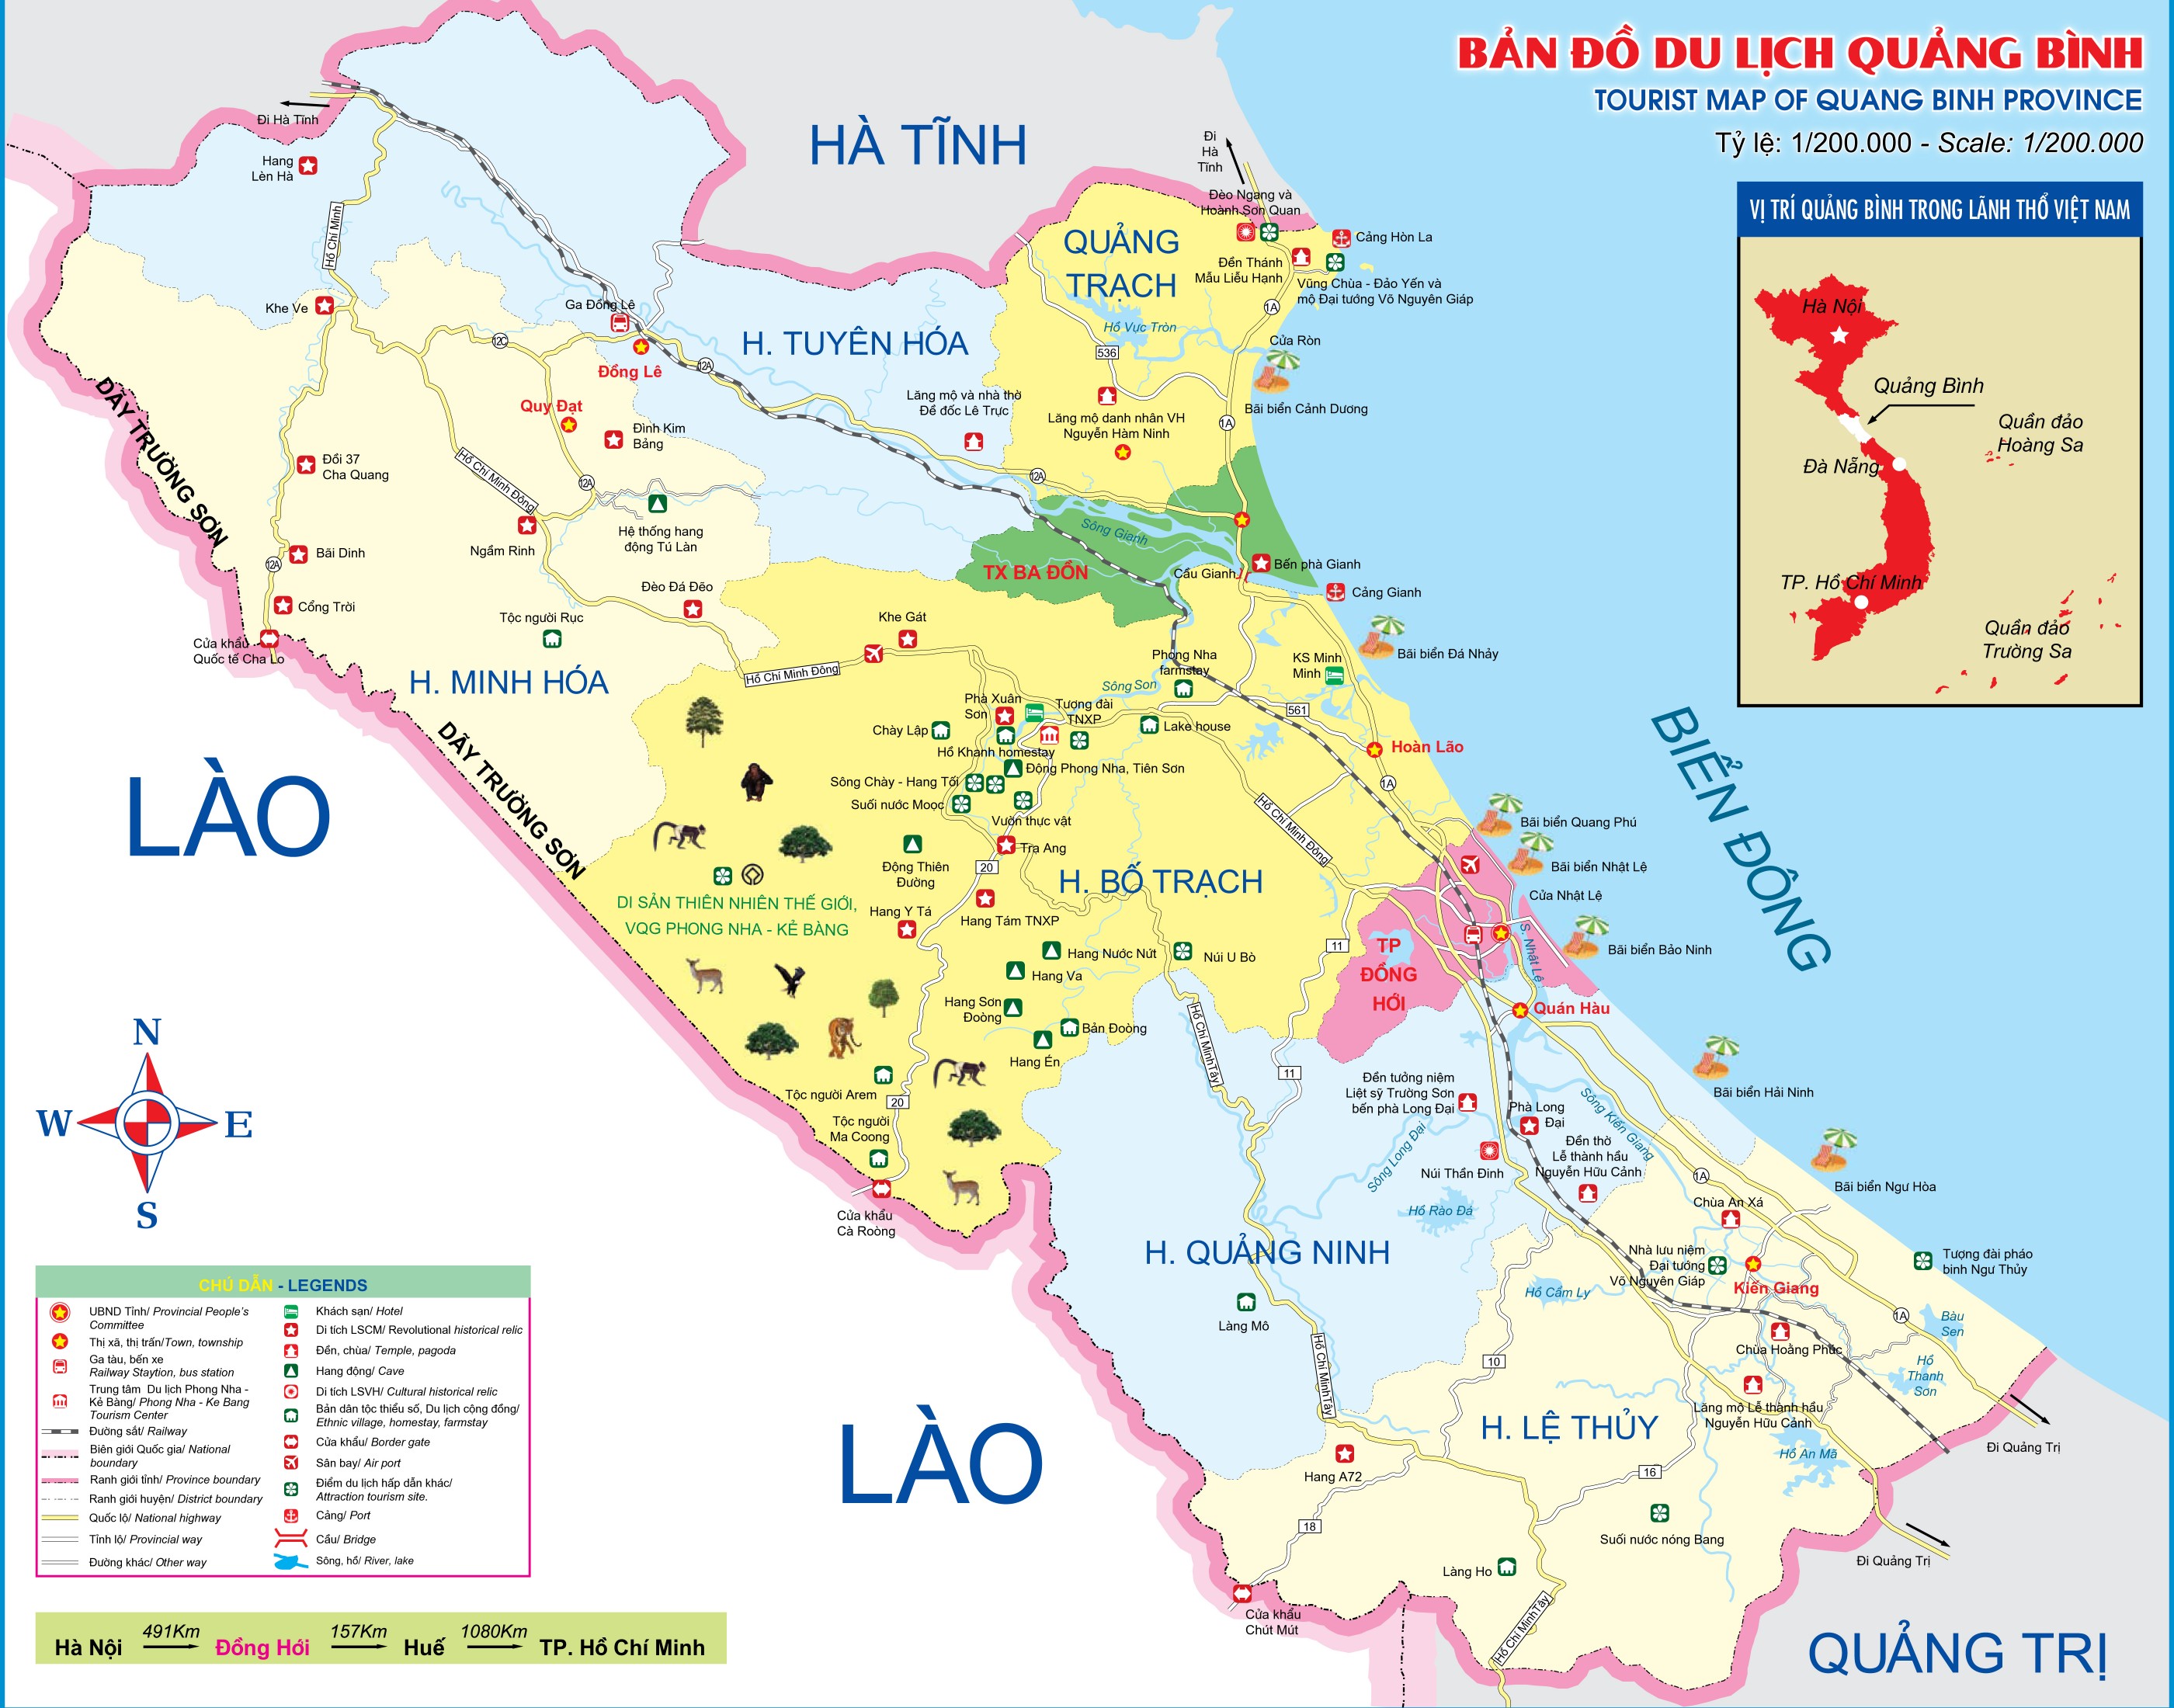 Bản đồ hành chính tỉnh Quảng Bình Khổ Lớn - 2024: Khám phá bản đồ hành chính tỉnh Quảng Bình khổ lớn cập nhật đến năm